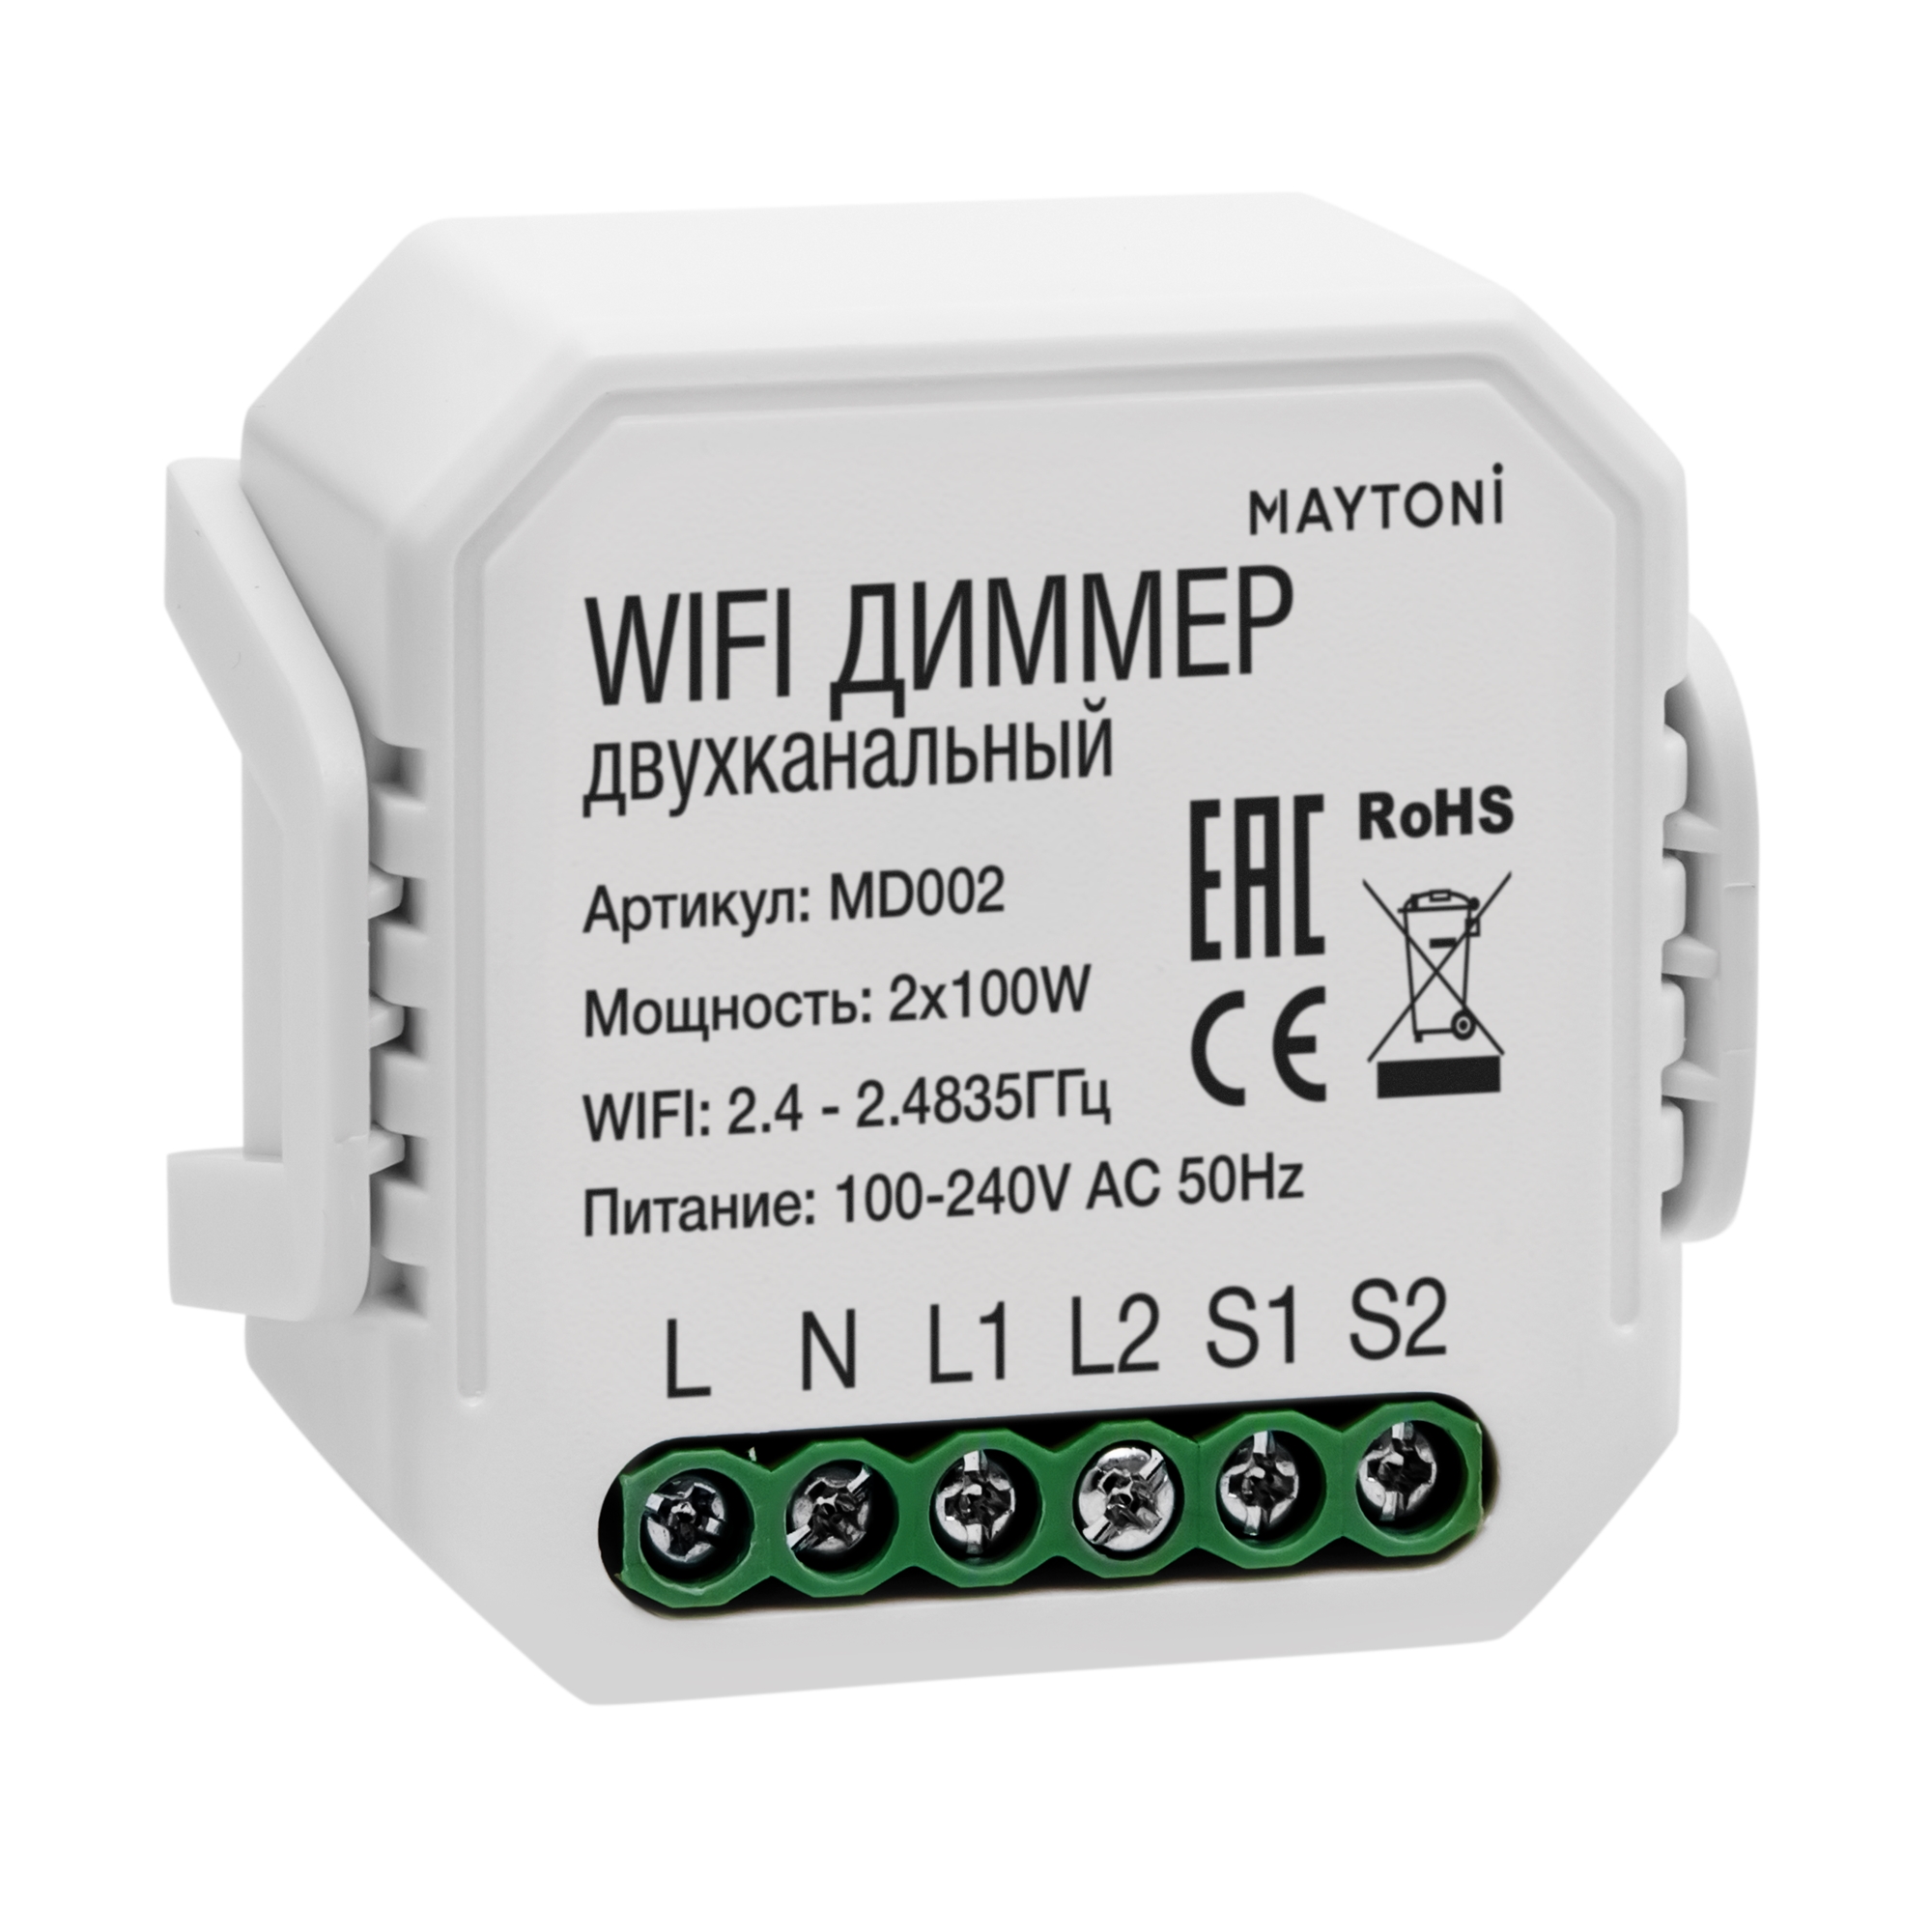 Wi-Fi  Maytoni Wi-Fi  MD002